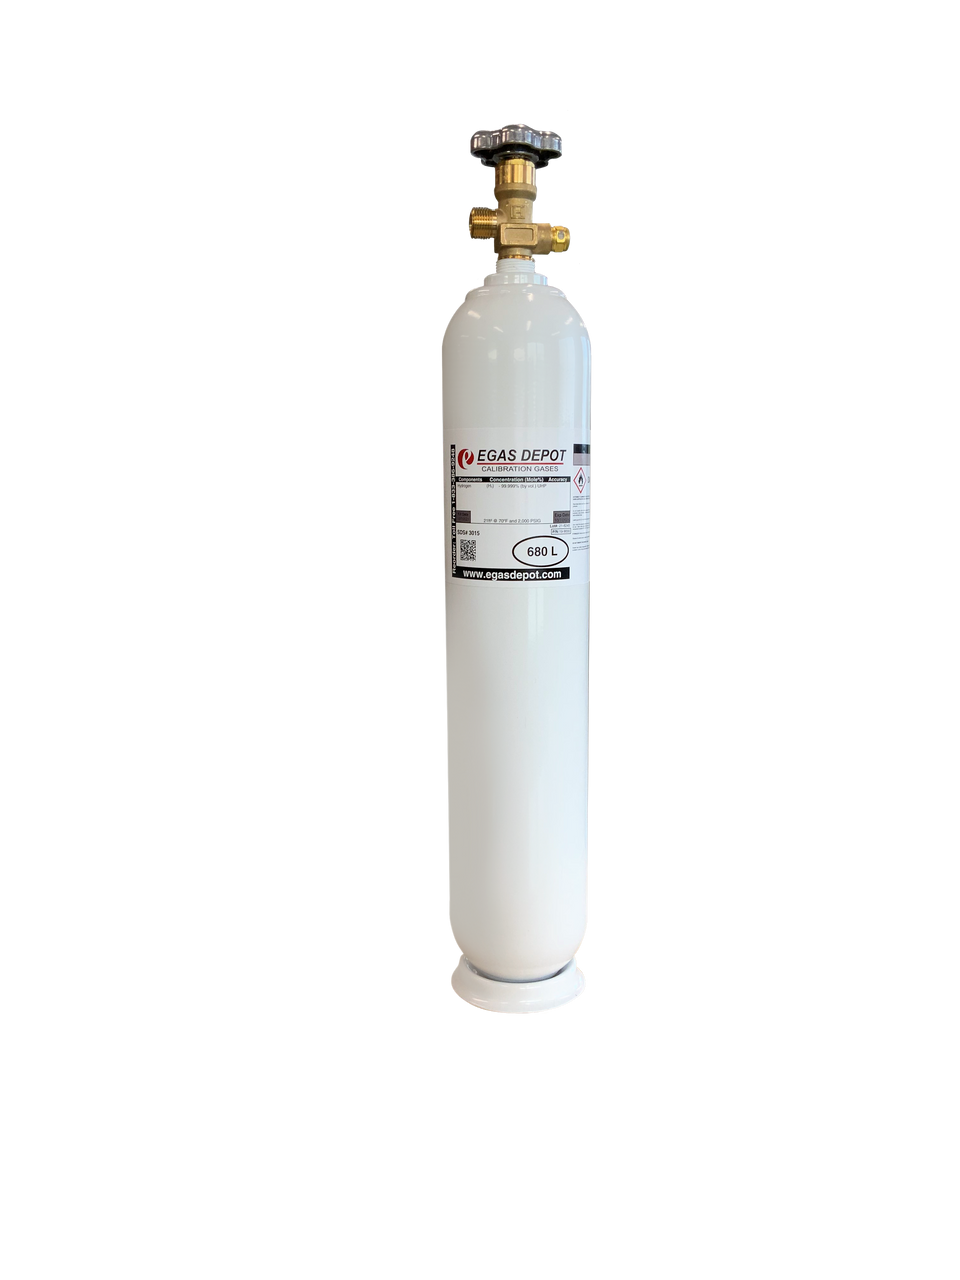 680 Liter-Hexane 25 ppm/ Air